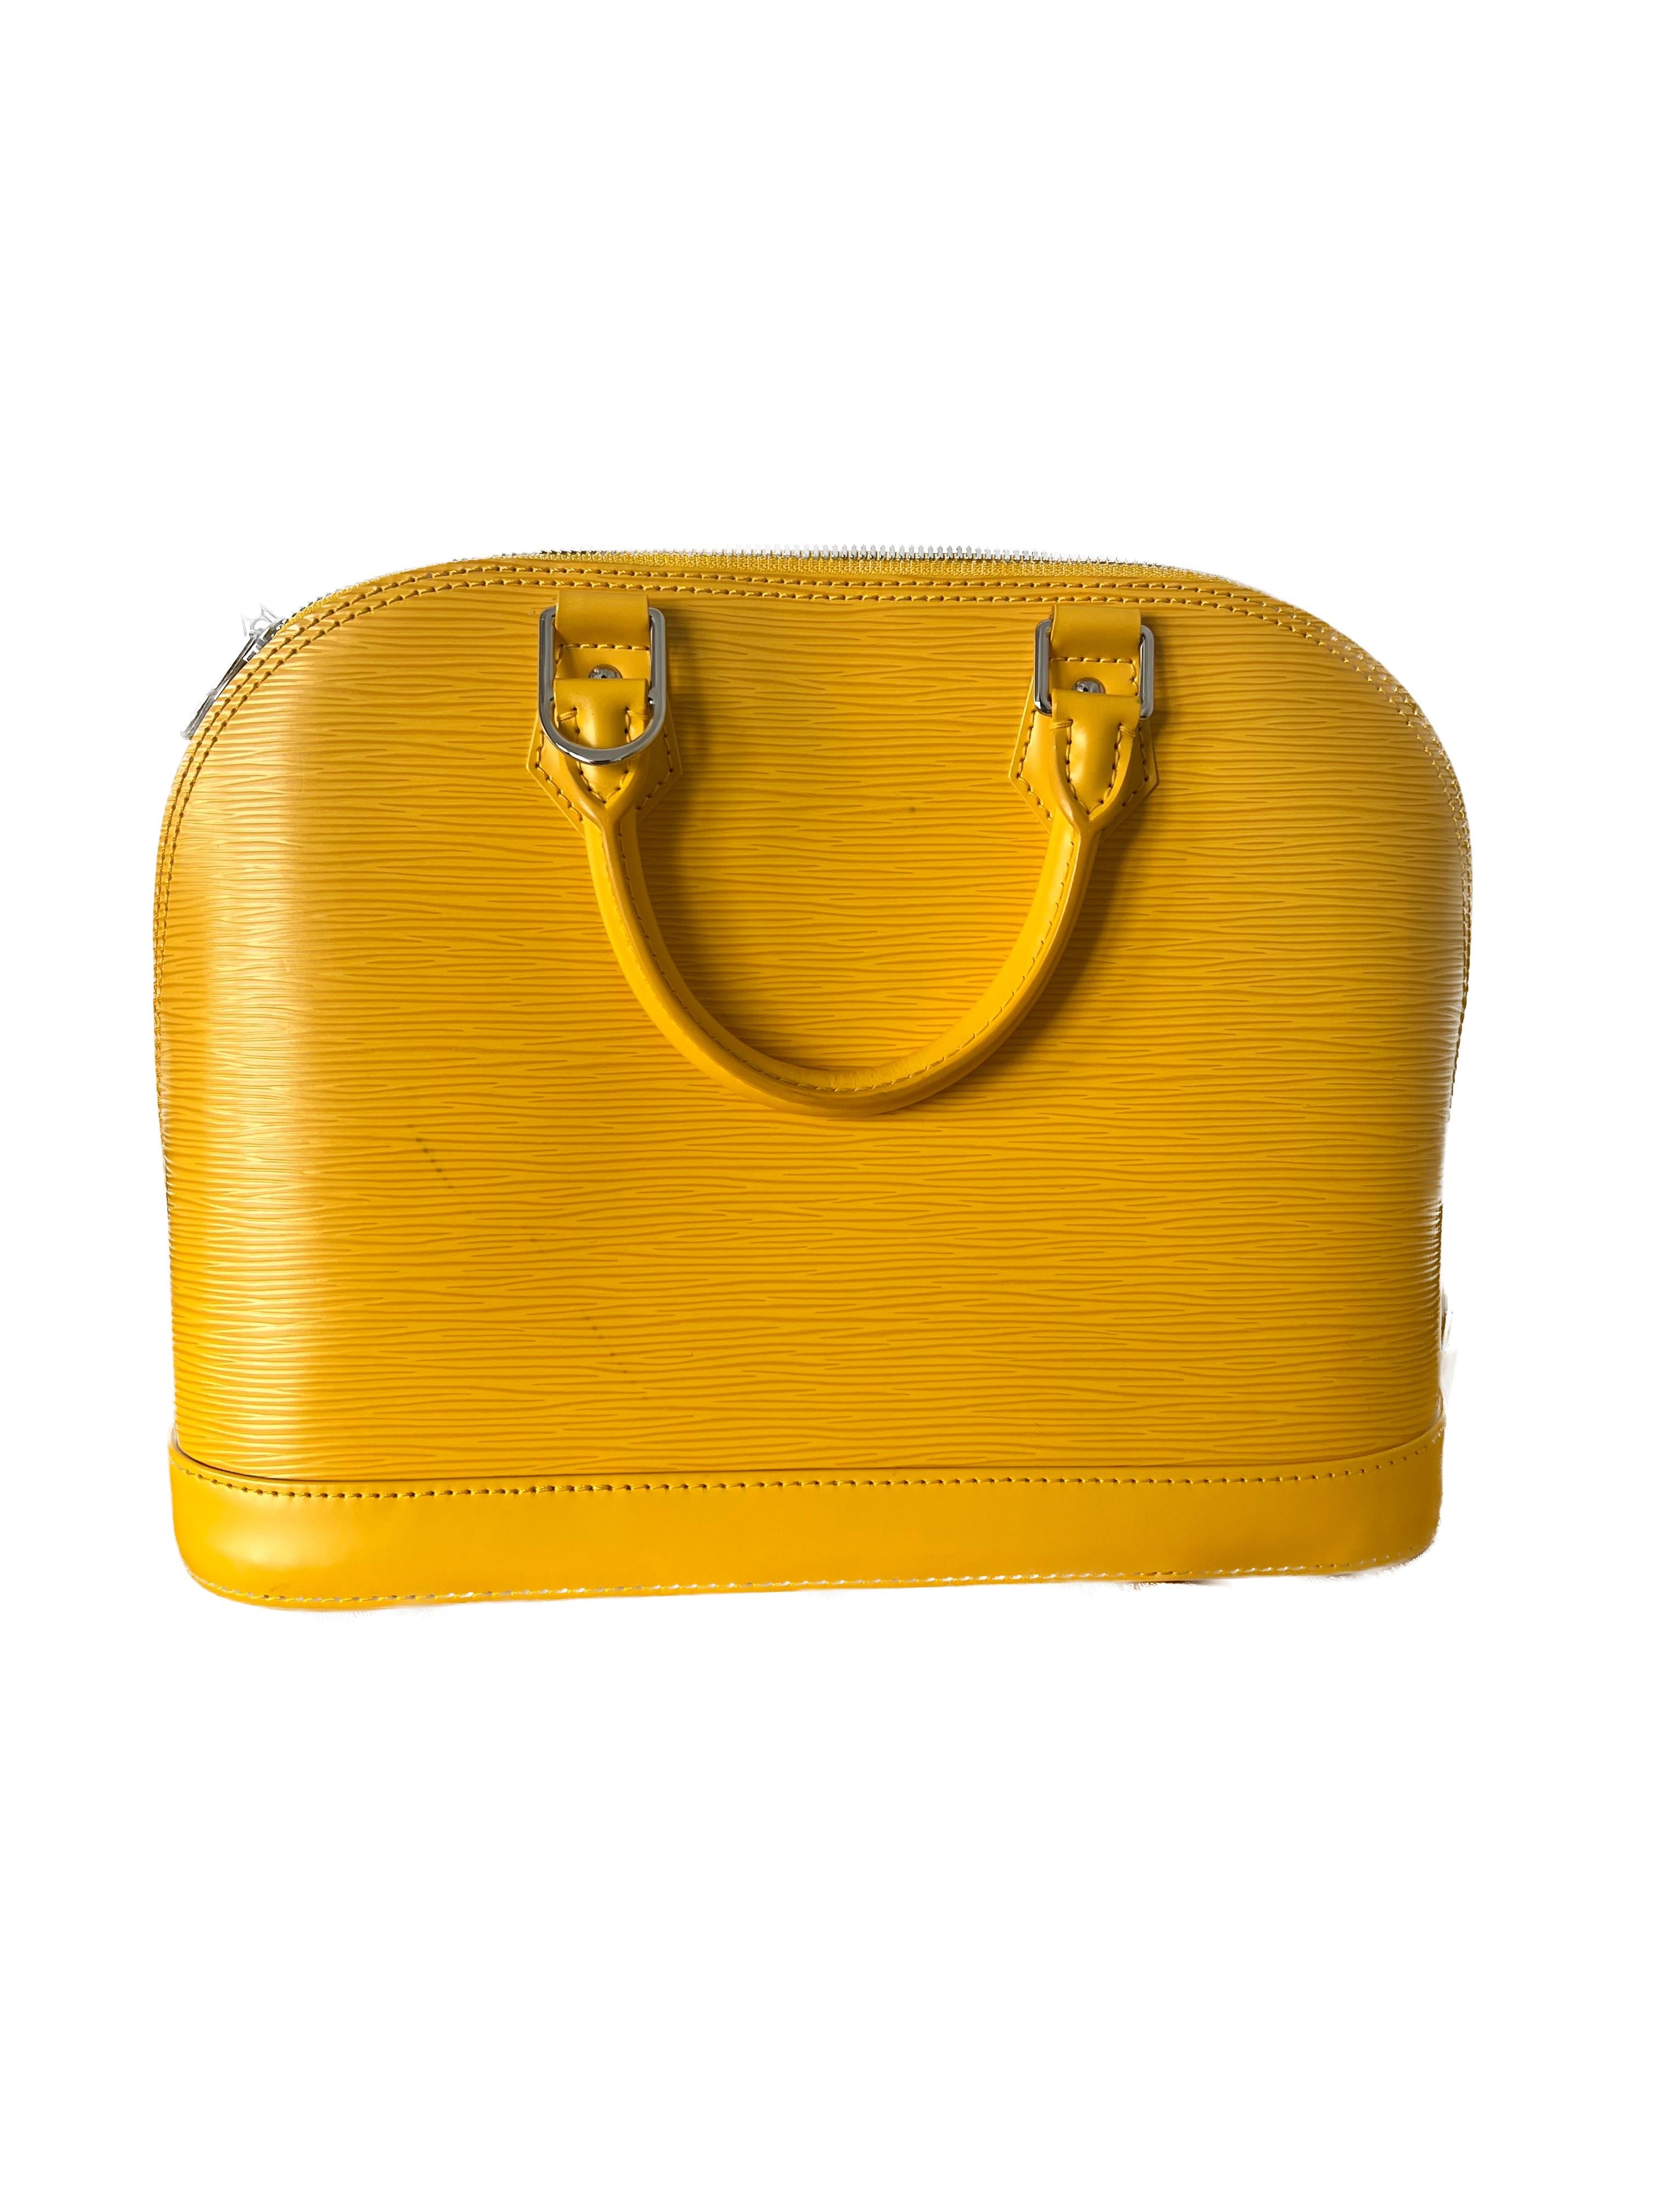 Louis Vuitton Yellow Epi Alma PM  4